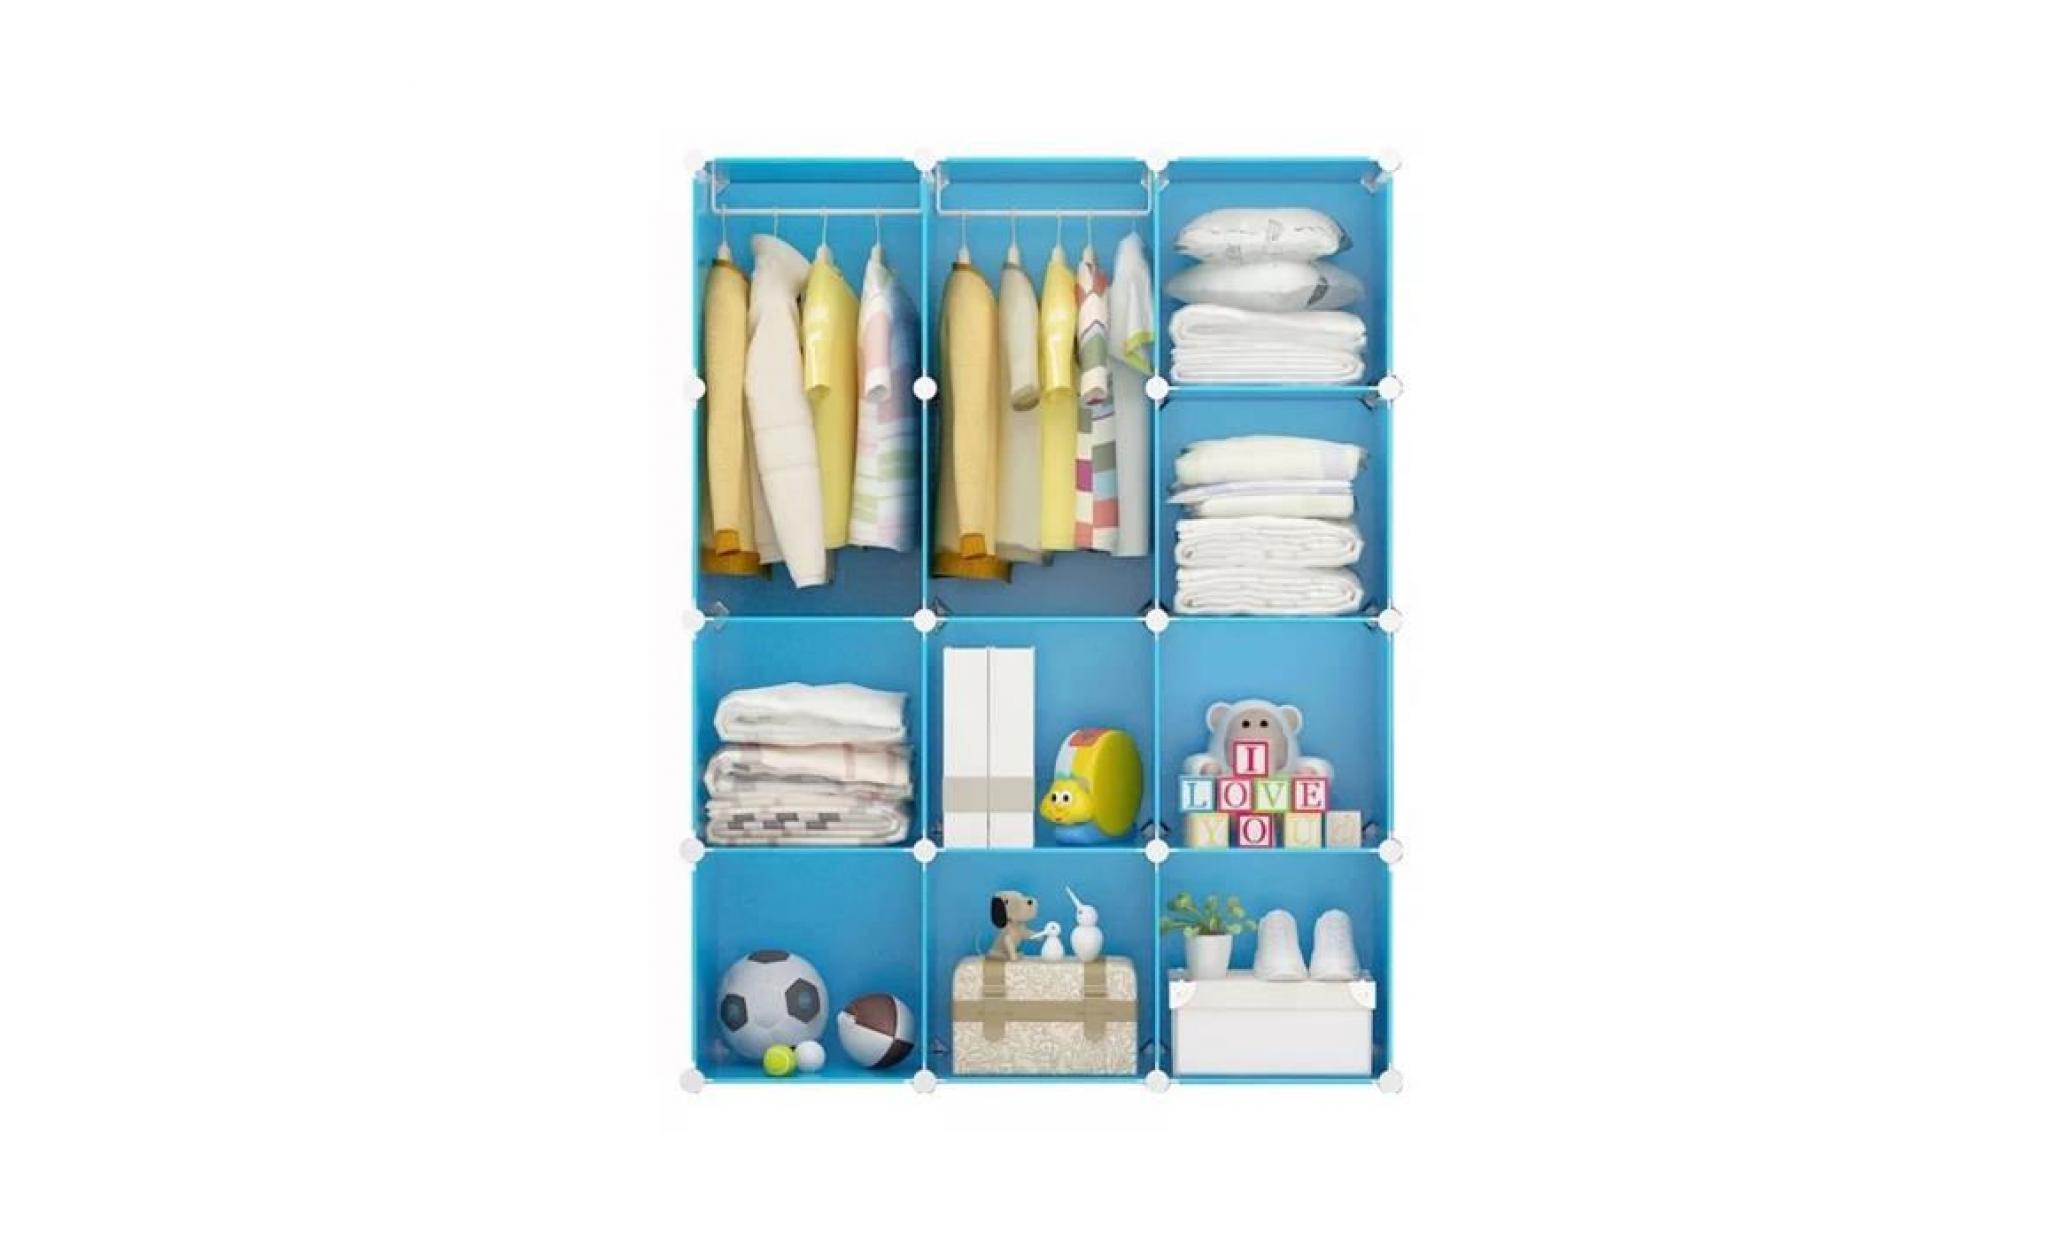 armoires etagères plastiques enfants bleu, 12 cubes armoires meubles de rangement pour vêtements chaussures jouets cartoon pas cher